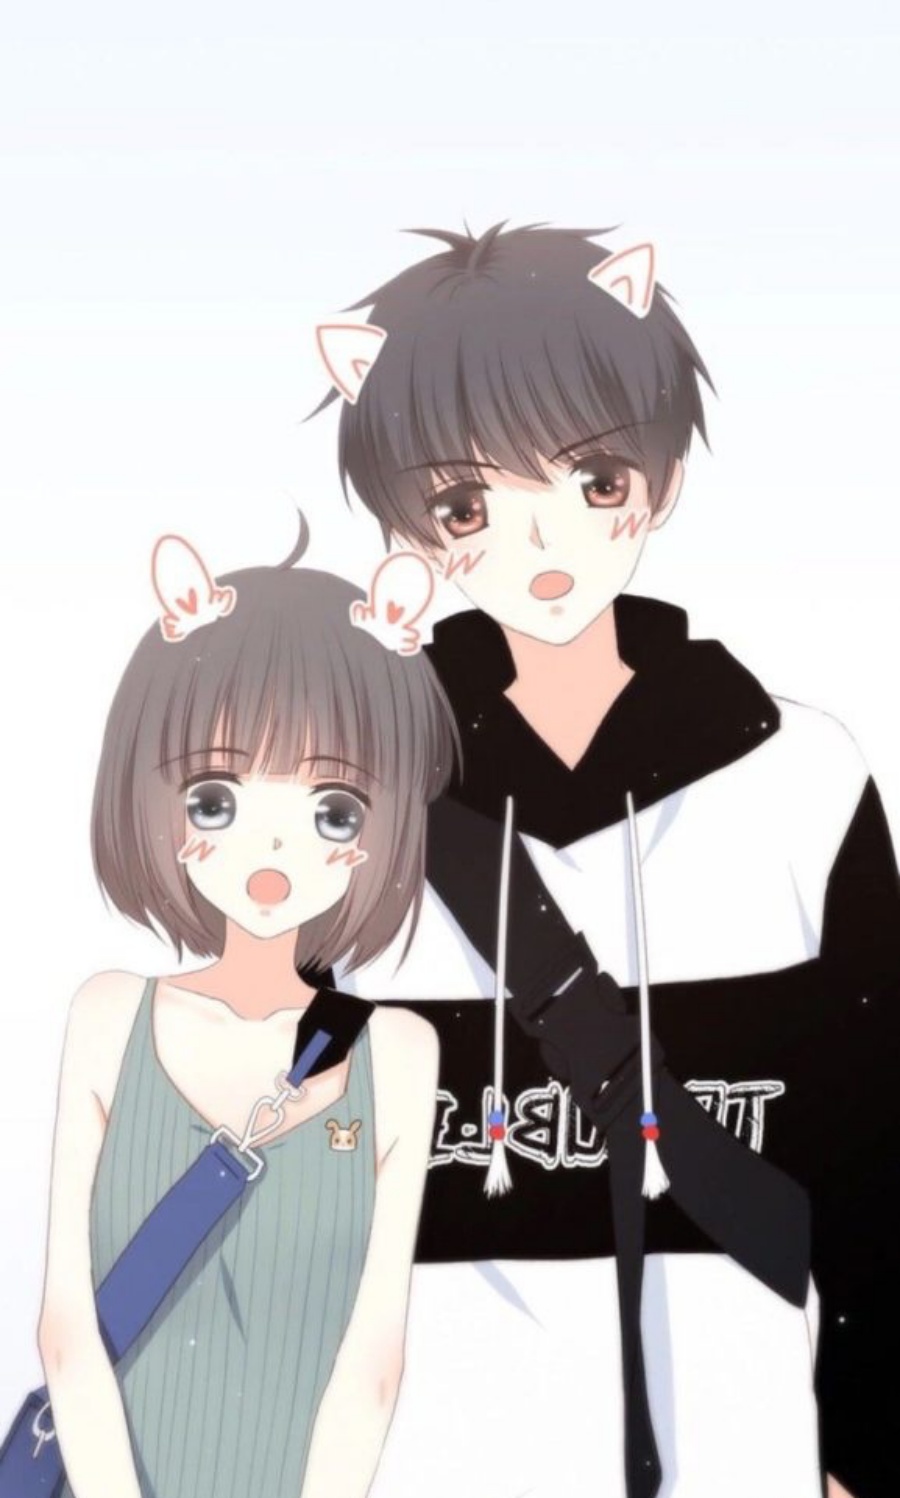 Nếu bạn là một fan anime và đang tìm kiếm một bức hình avatar anime đôi đáng yêu thì đây chính là lựa chọn hoàn hảo! Check ngay hình avatar anime đôi cute này và truyền tải tình yêu đến người mình yêu thương nhé!